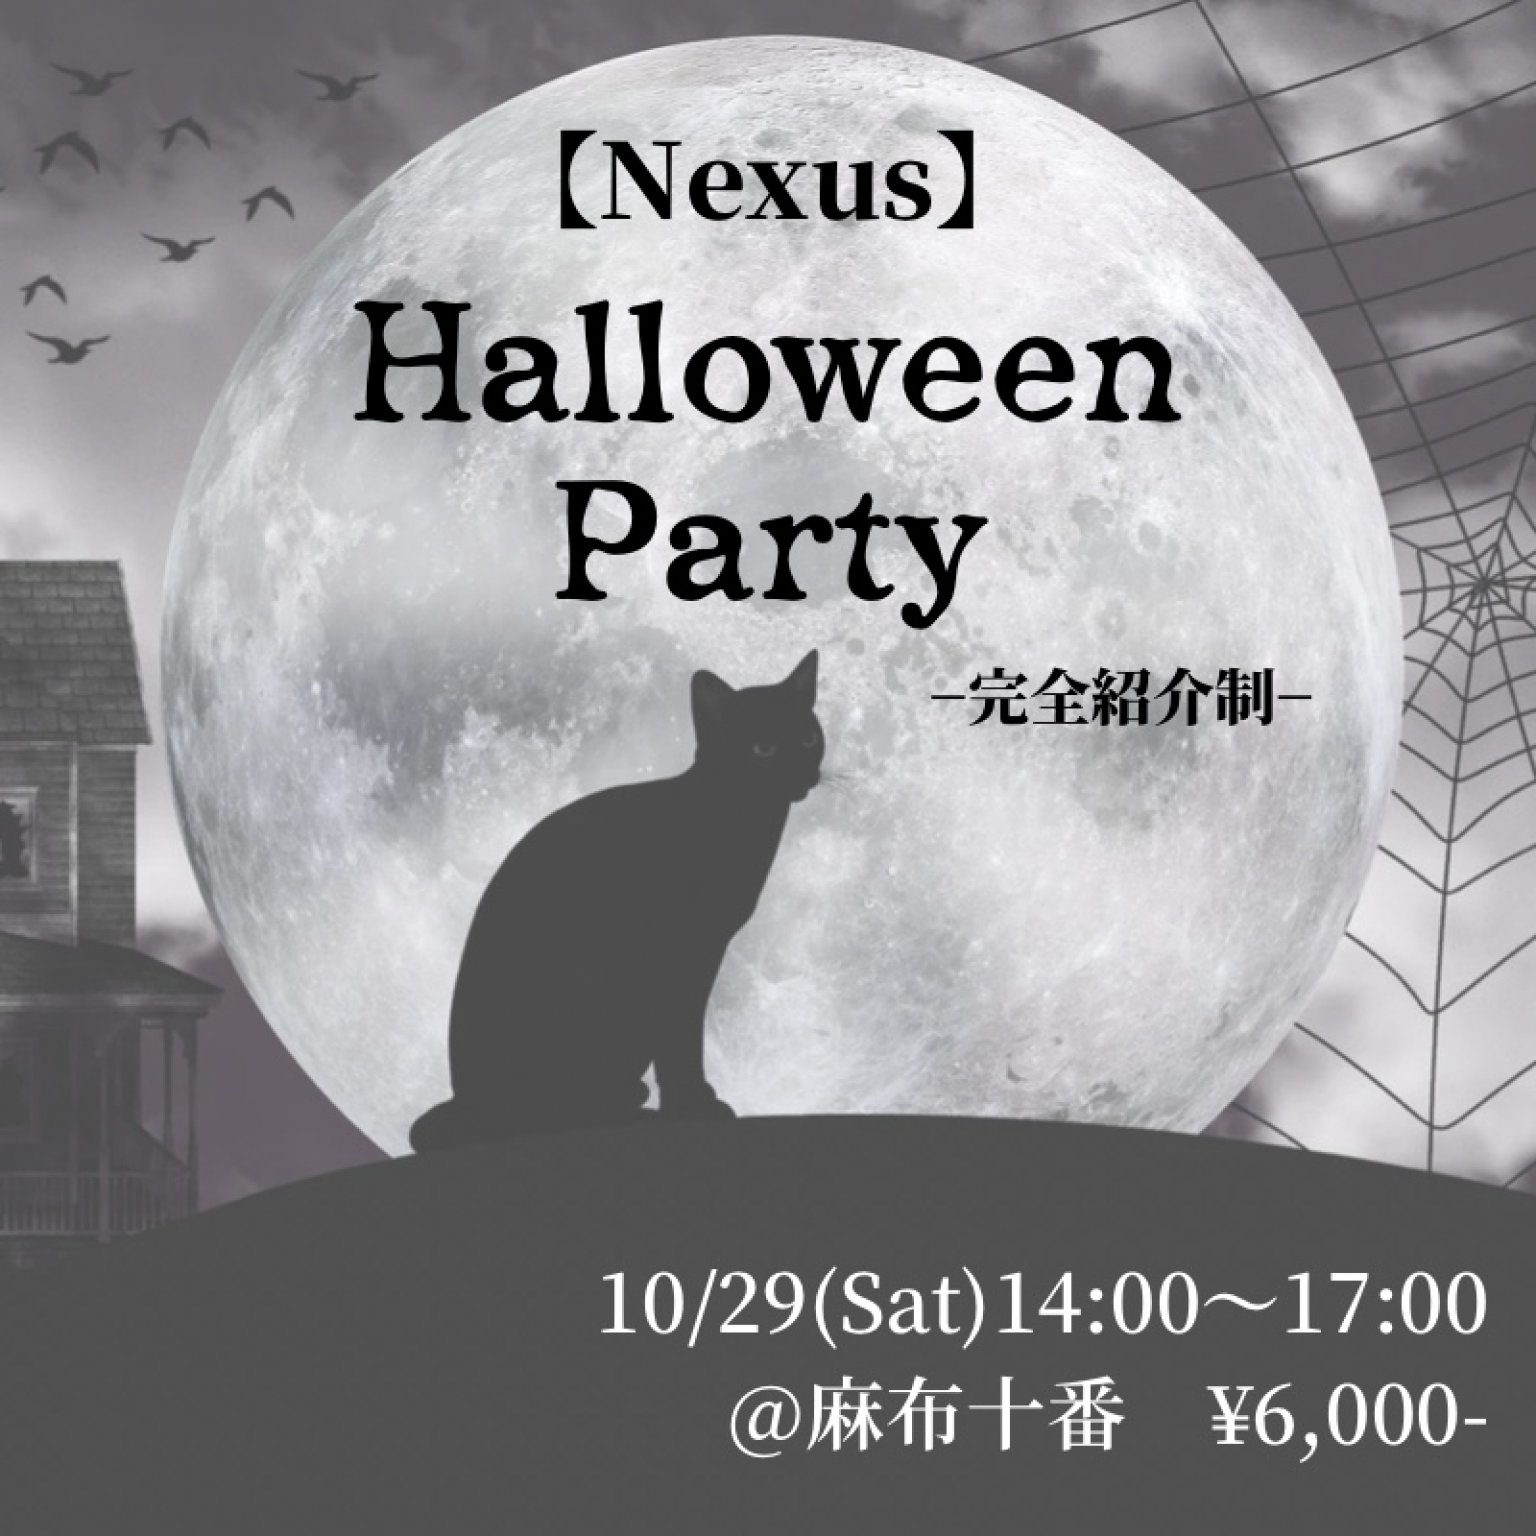 【Nexus】Halloween party(完全紹介制)